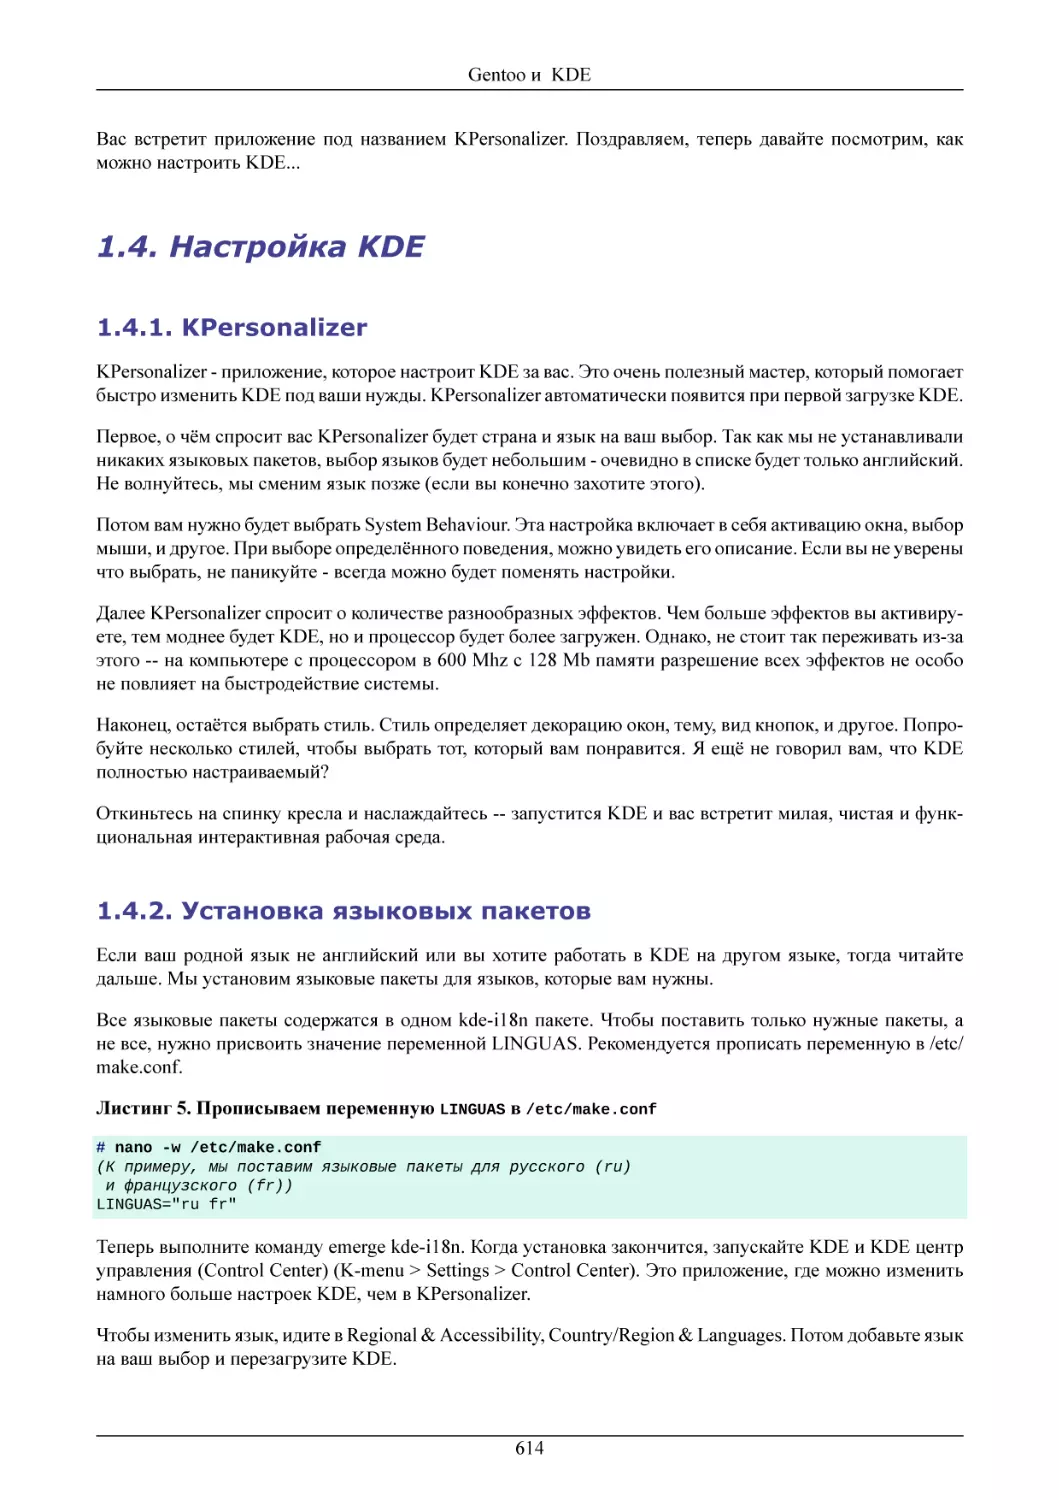 Настройка KDE
KPersonalizer
Установка языковых пакетов